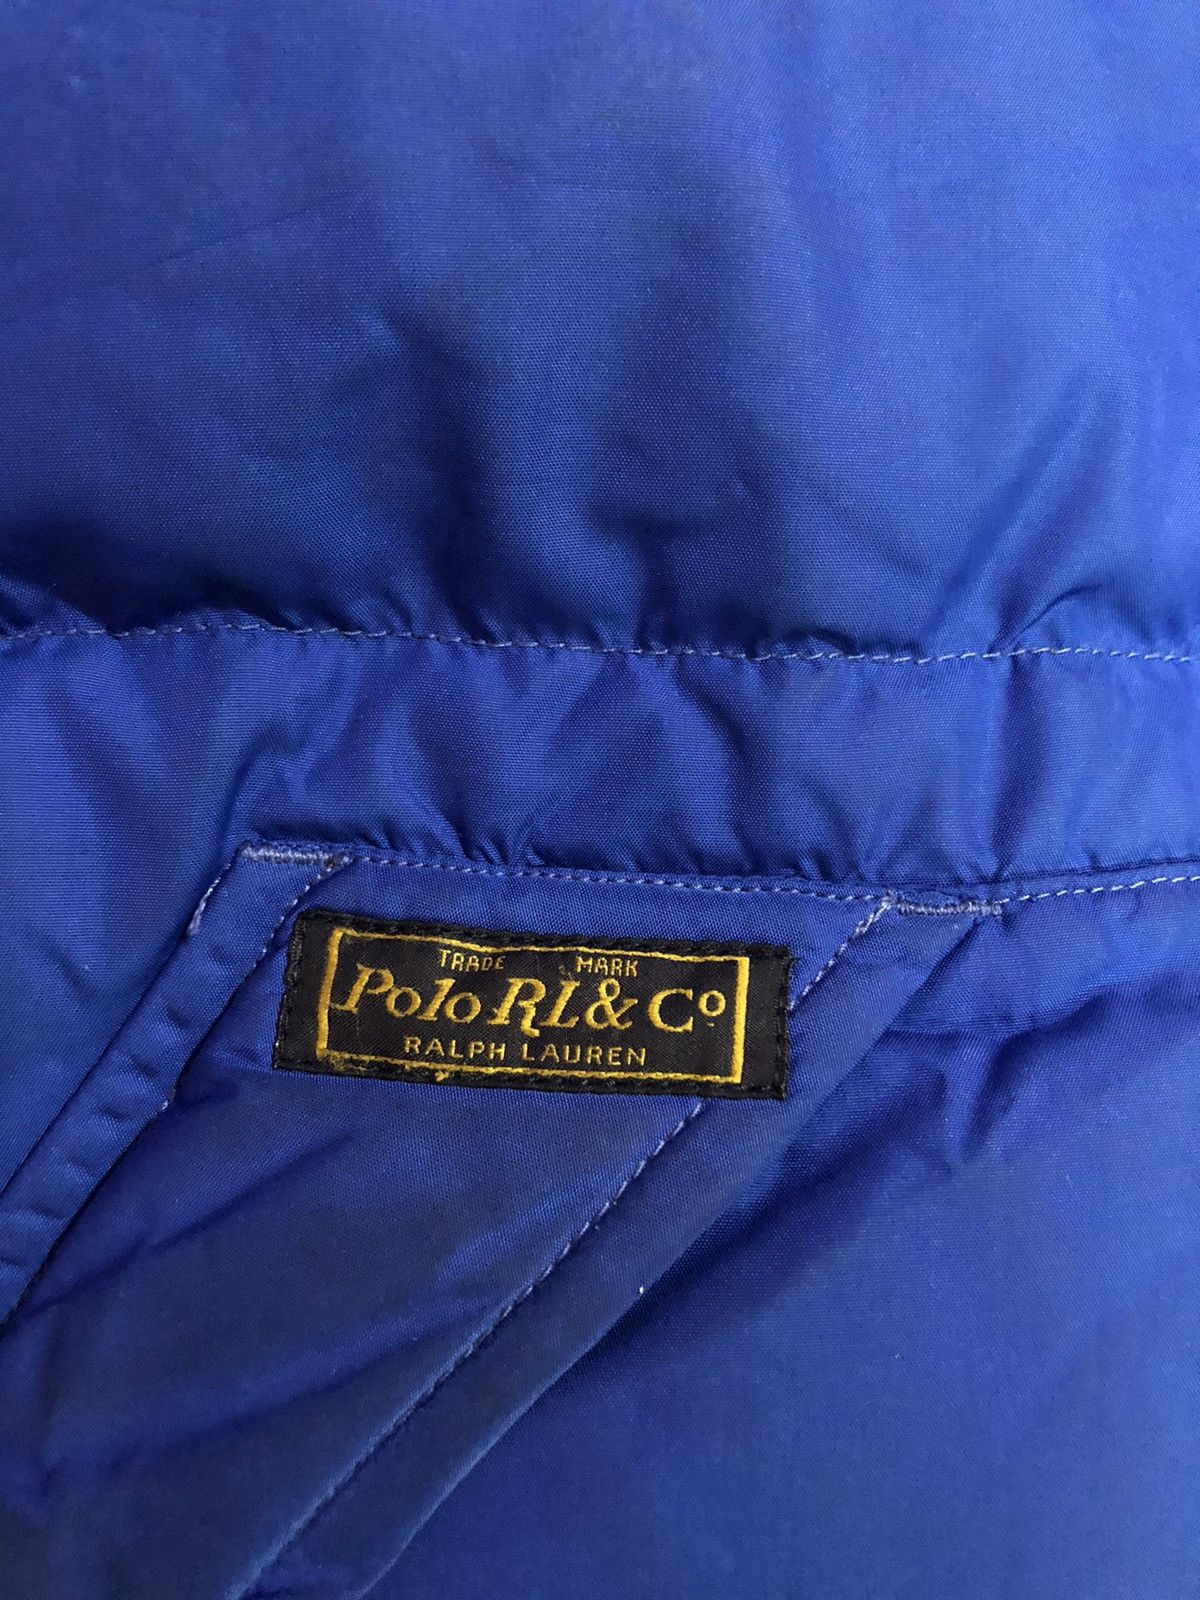 Polo Ralph Lauren Goose Puffer Jacket - 7